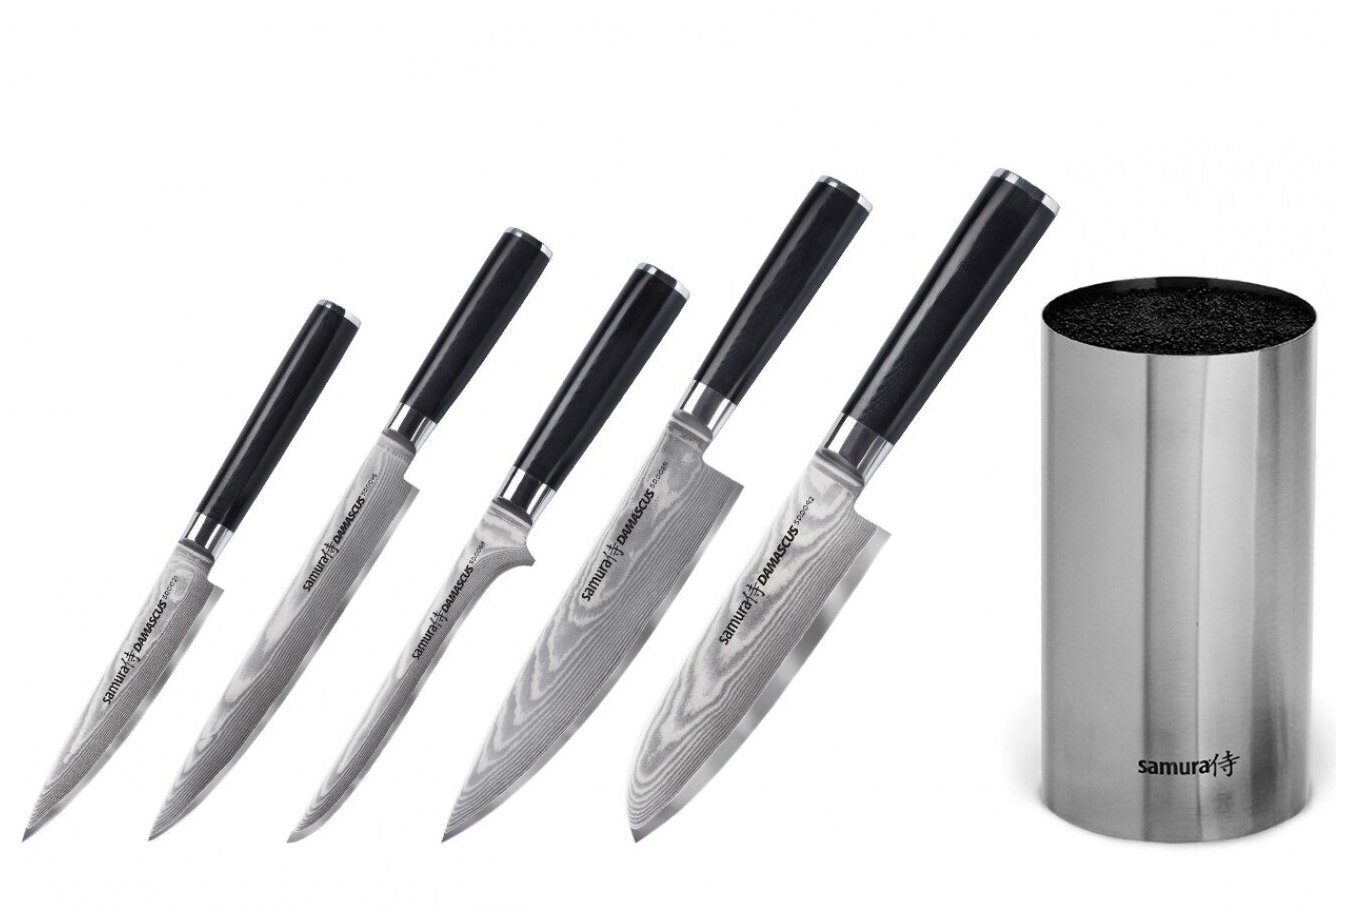 SD-0250МЕТП Набор из 5-ти кухонных ножей Samura Damascus универсальный, слайсер, обвалочный, шеф, сантоку и металлическая подставка